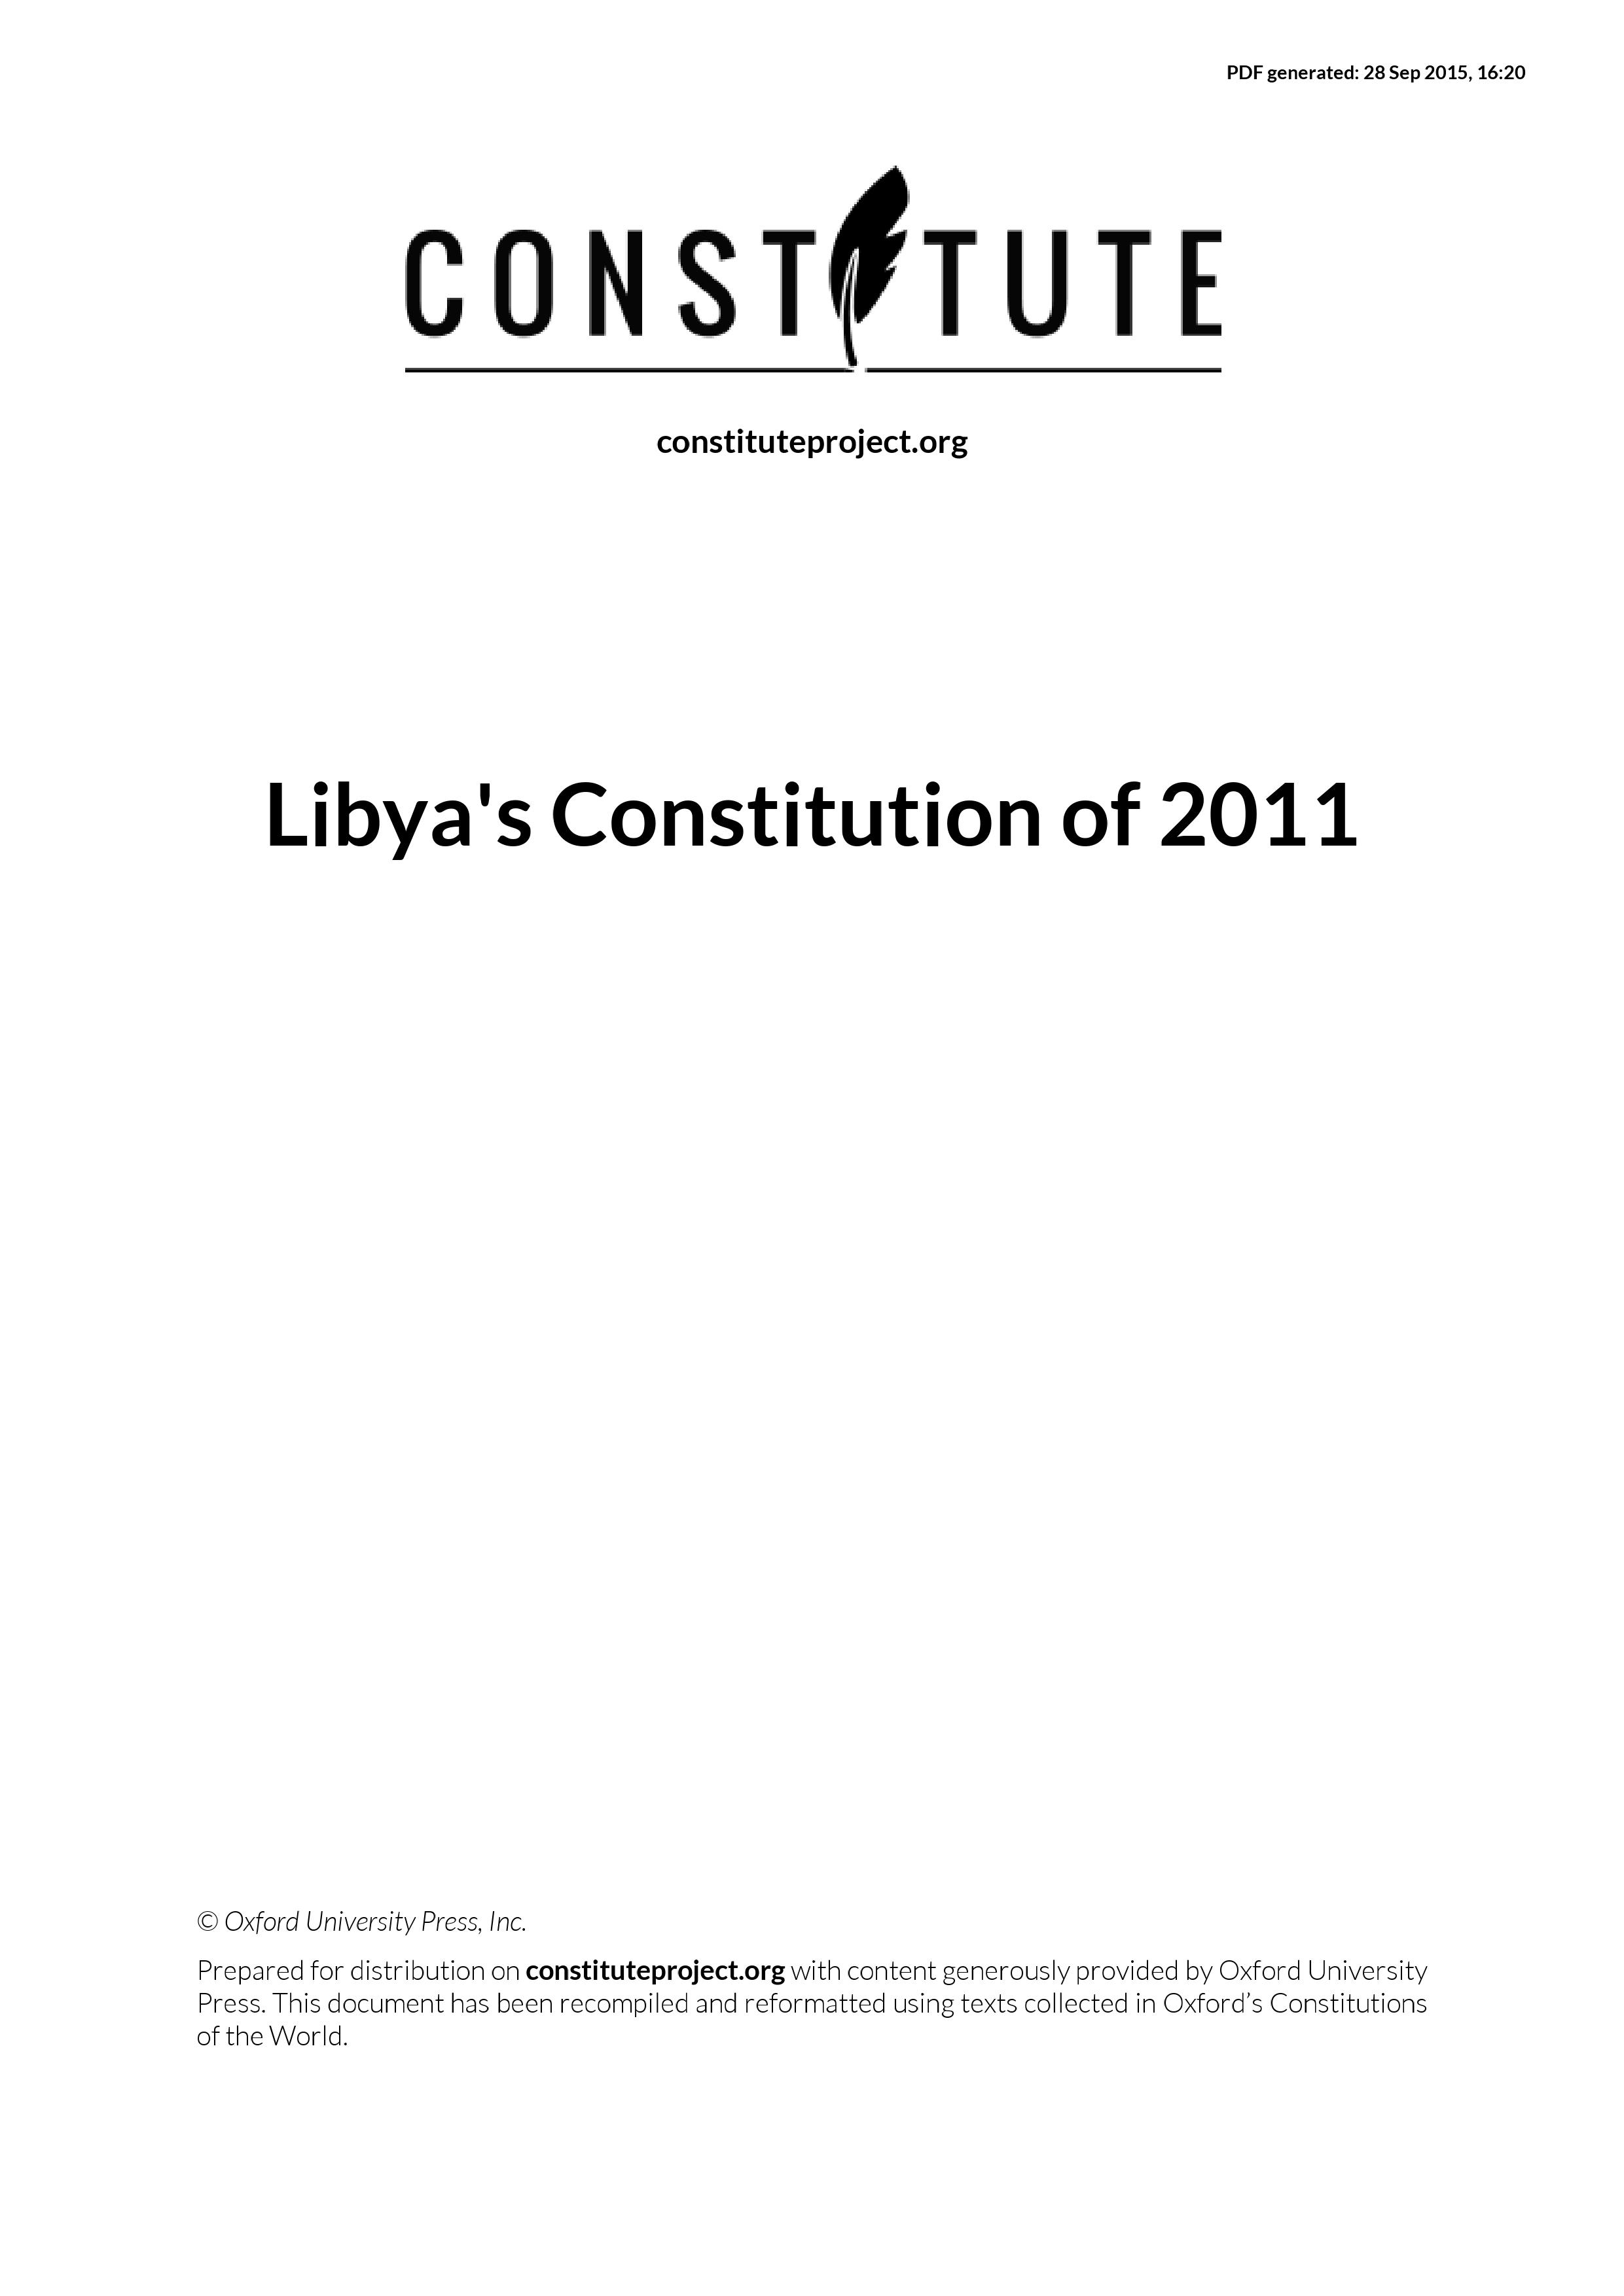 Interim Constitution - Libya (2011-present) 